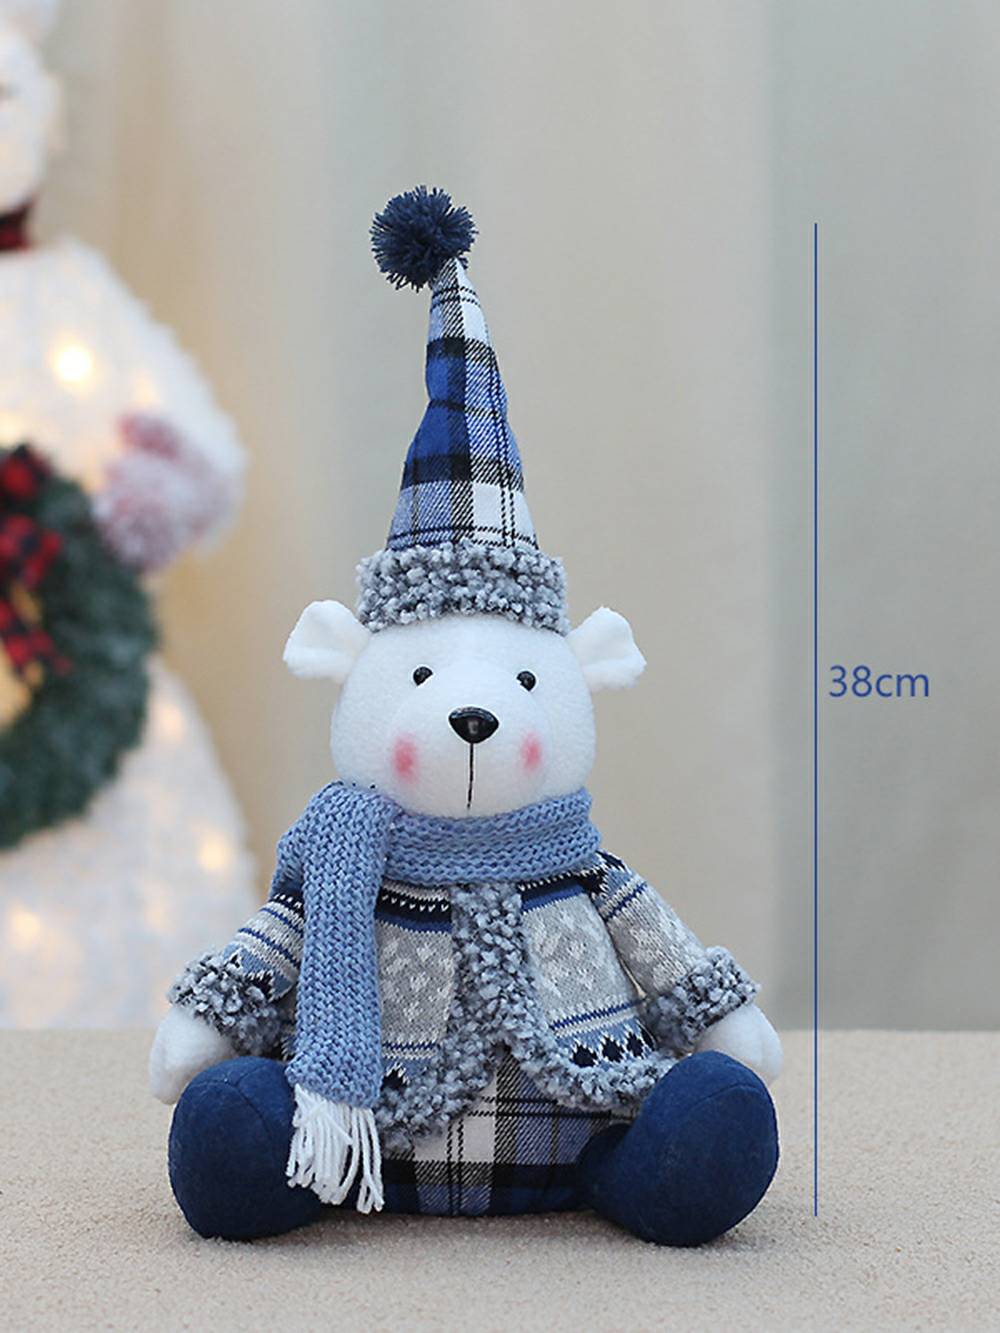 Décoration de poupée ours bleu mer en tissu de Noël